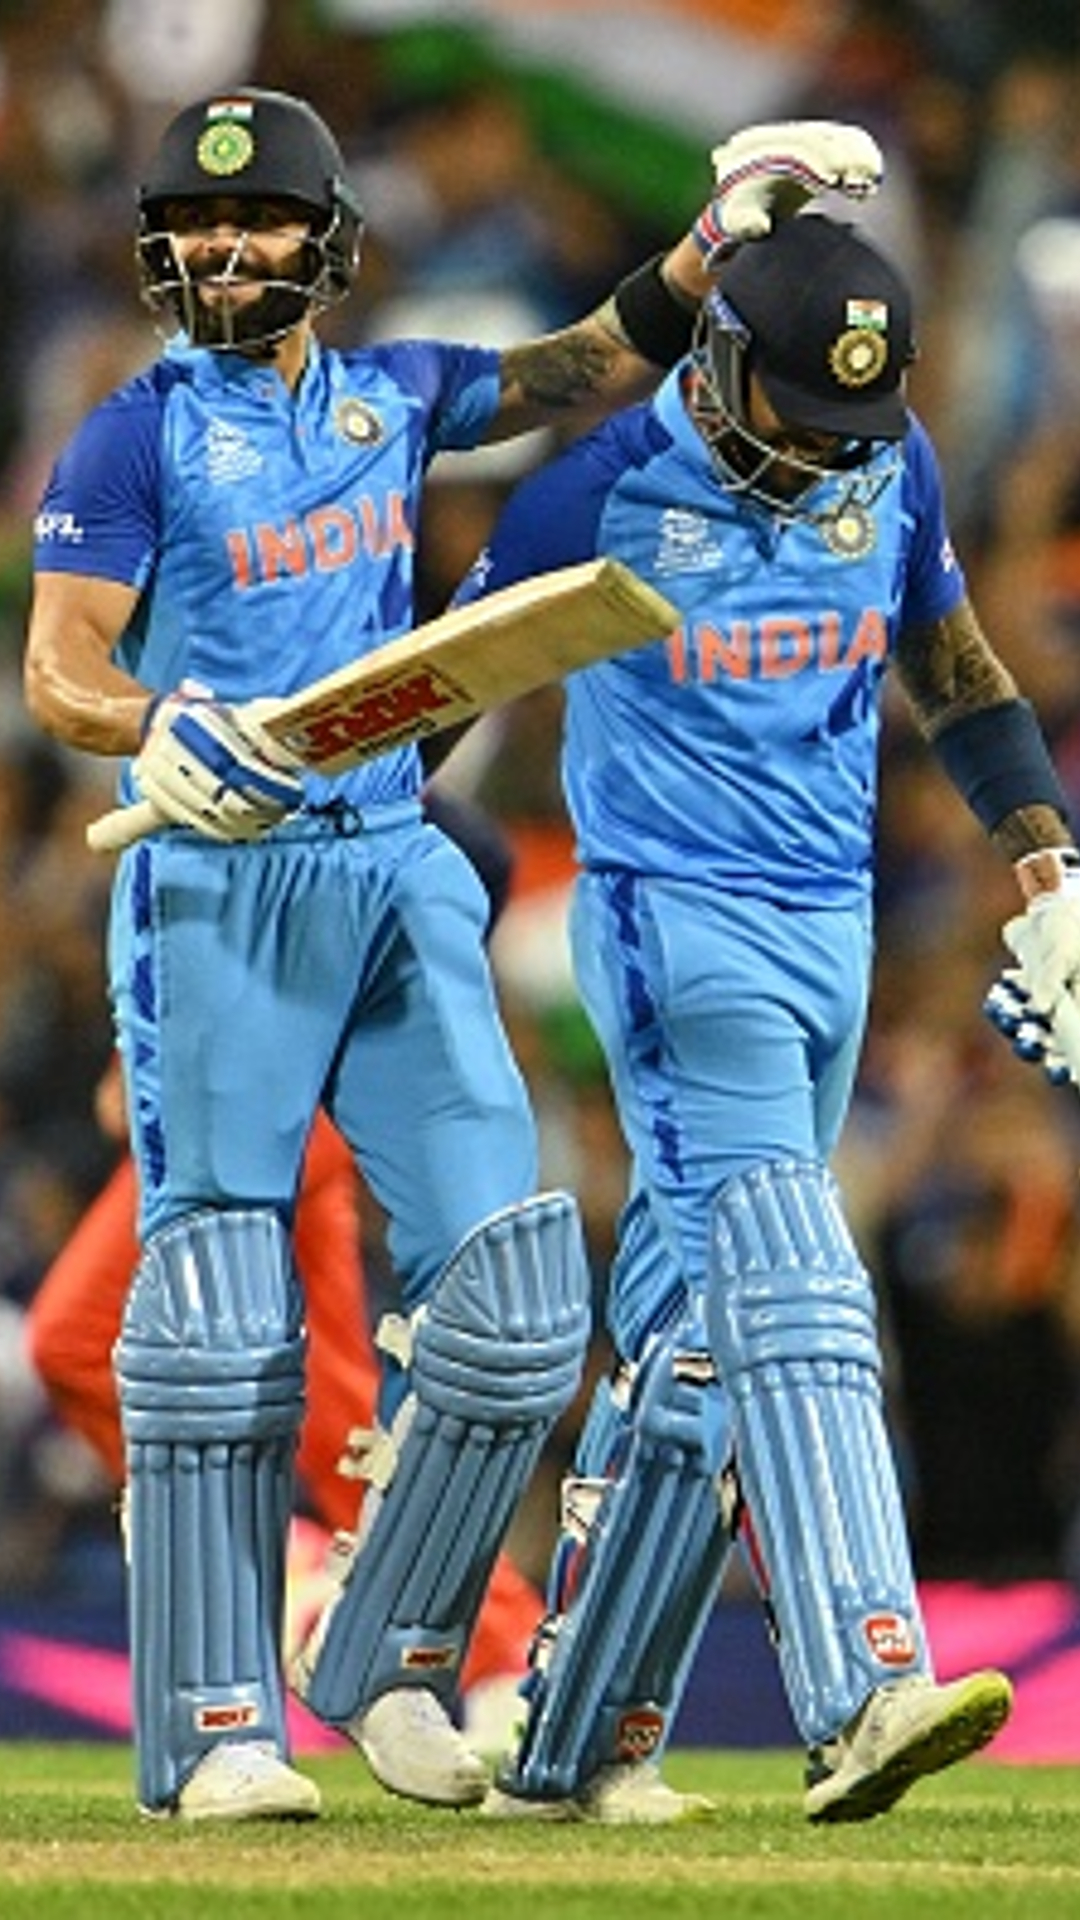 IND vs NZ 3rd T20I: India's biggest wins in T20Is by margin of runs featuring 168-run win vs NZ